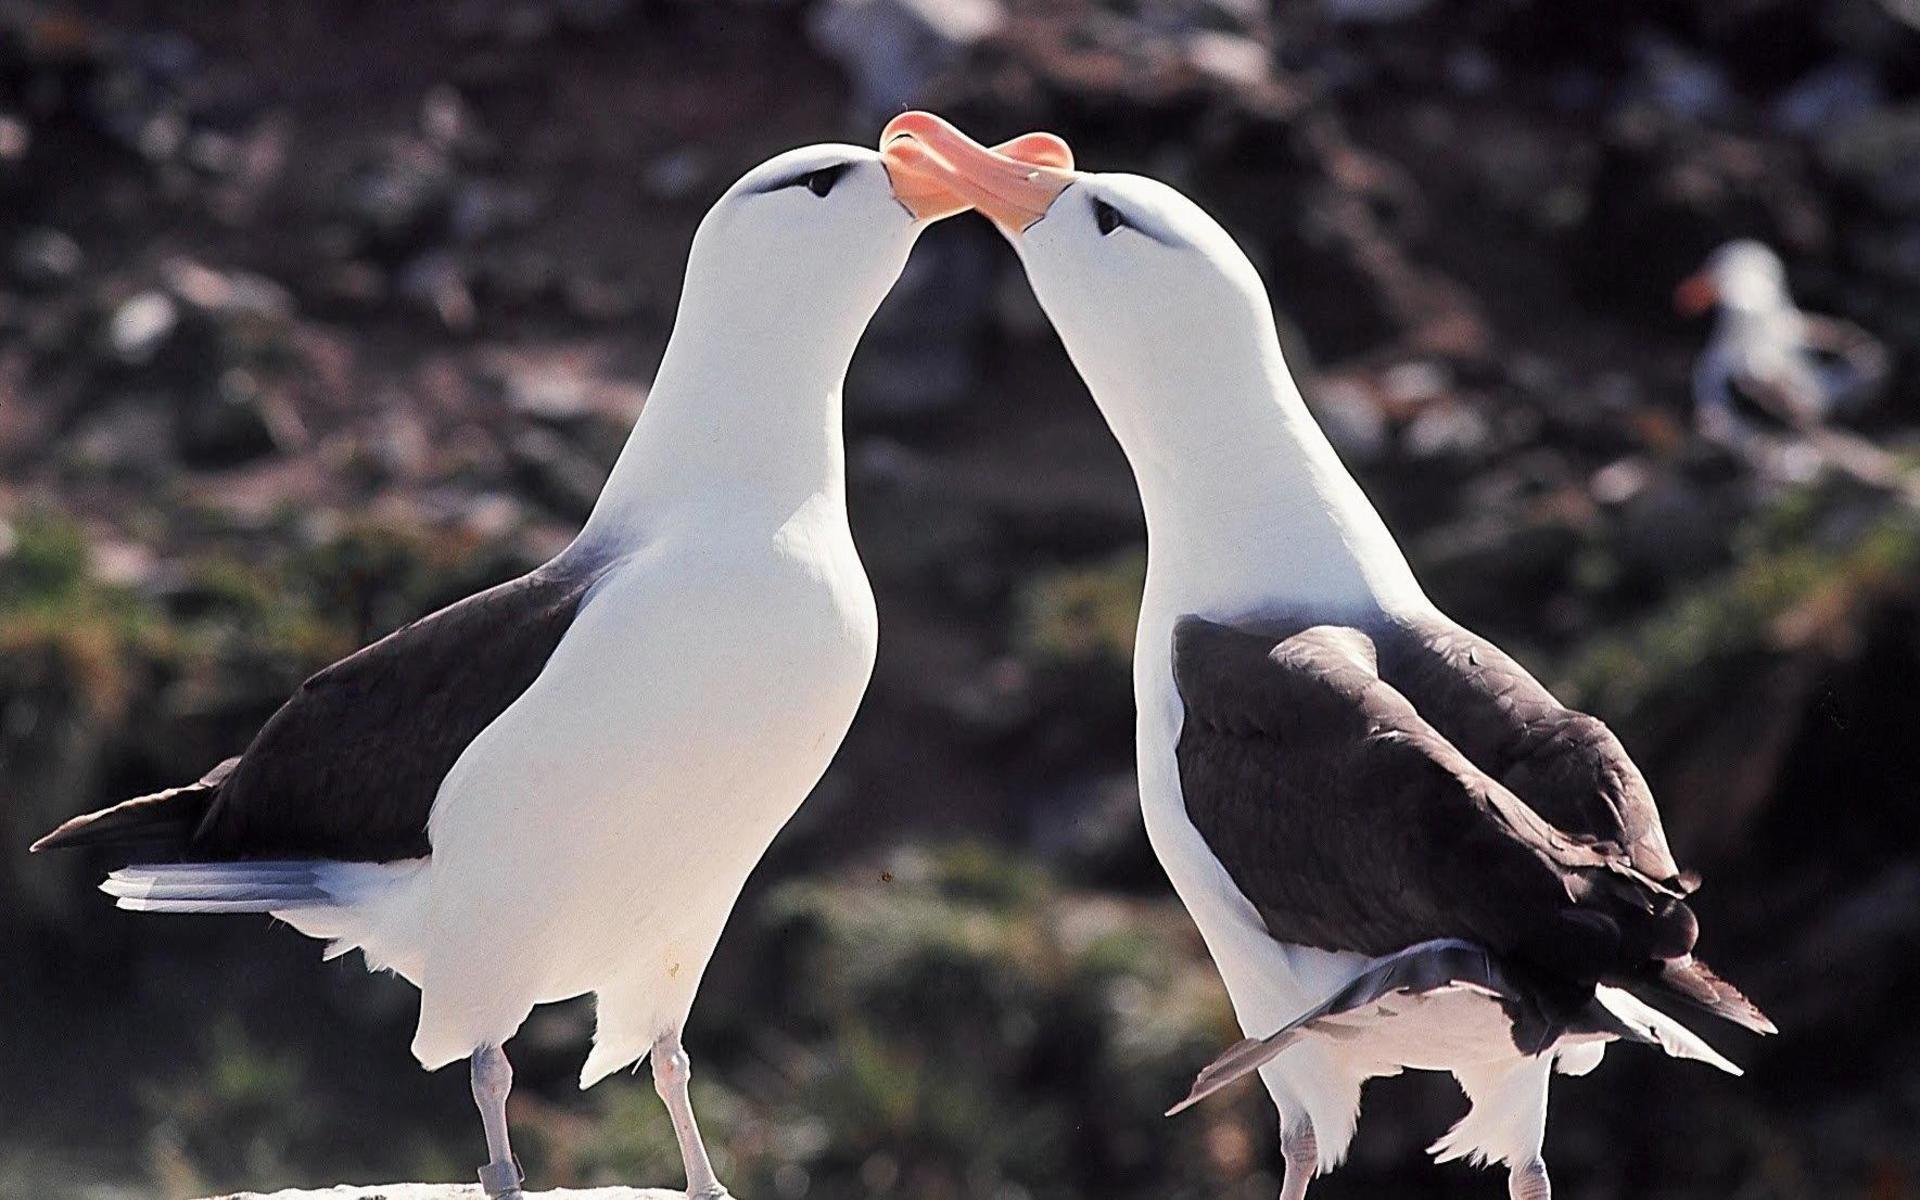 Albatrossar i parningslek på Galapagos, fångade av Sven Gillsäters kamera i slutet av 1960-talet.